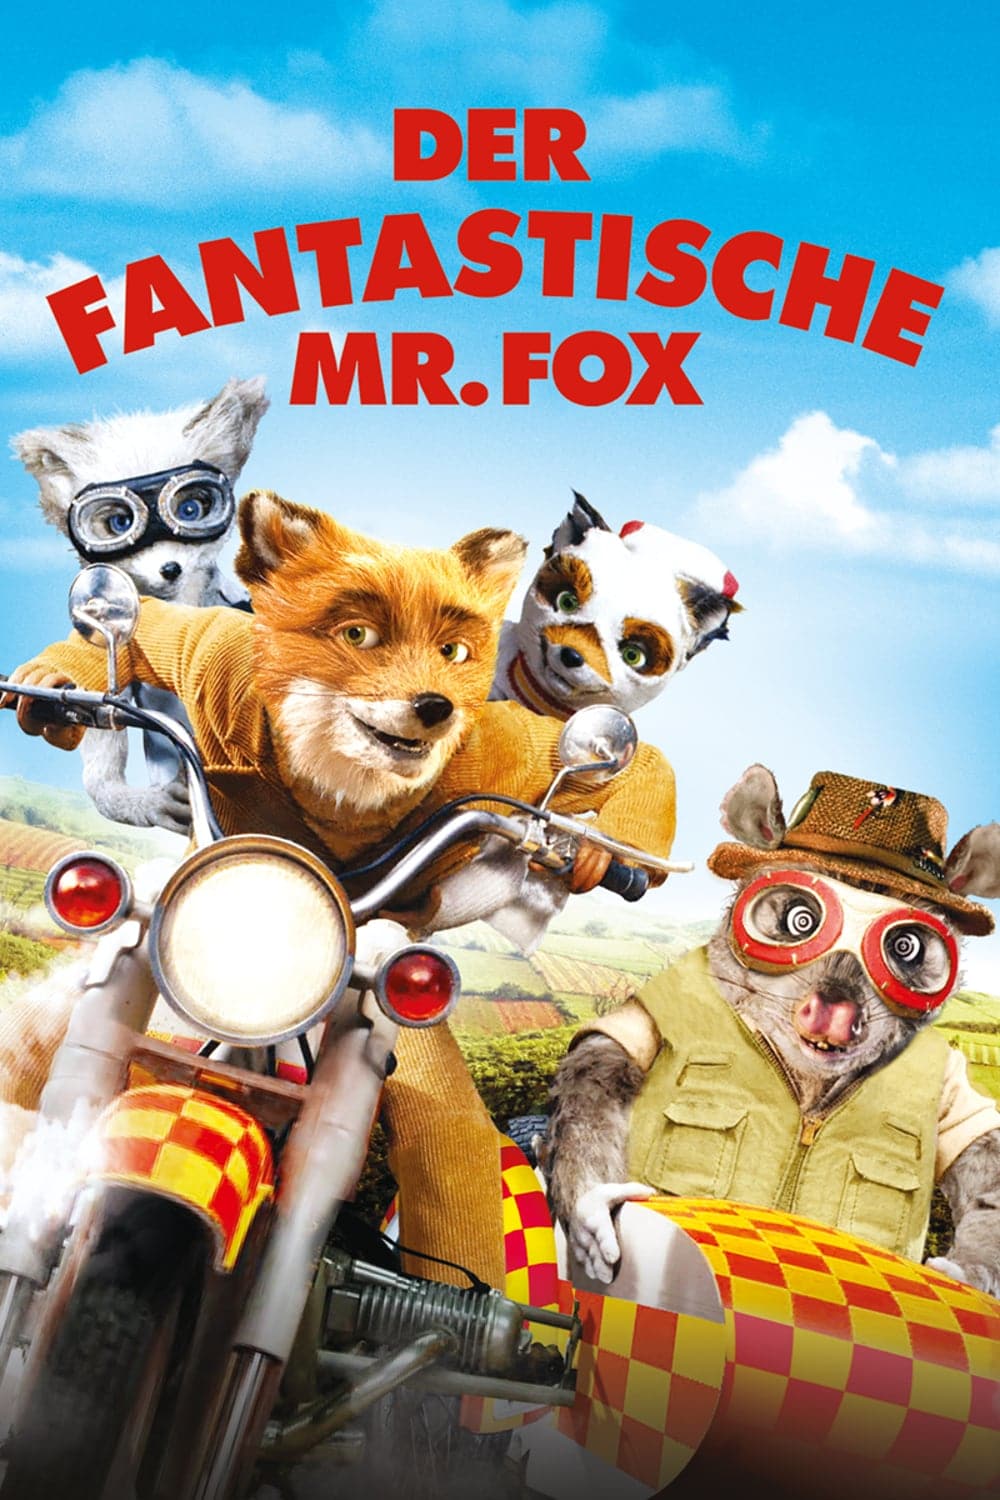 Plakat von "Der fantastische Mr. Fox"